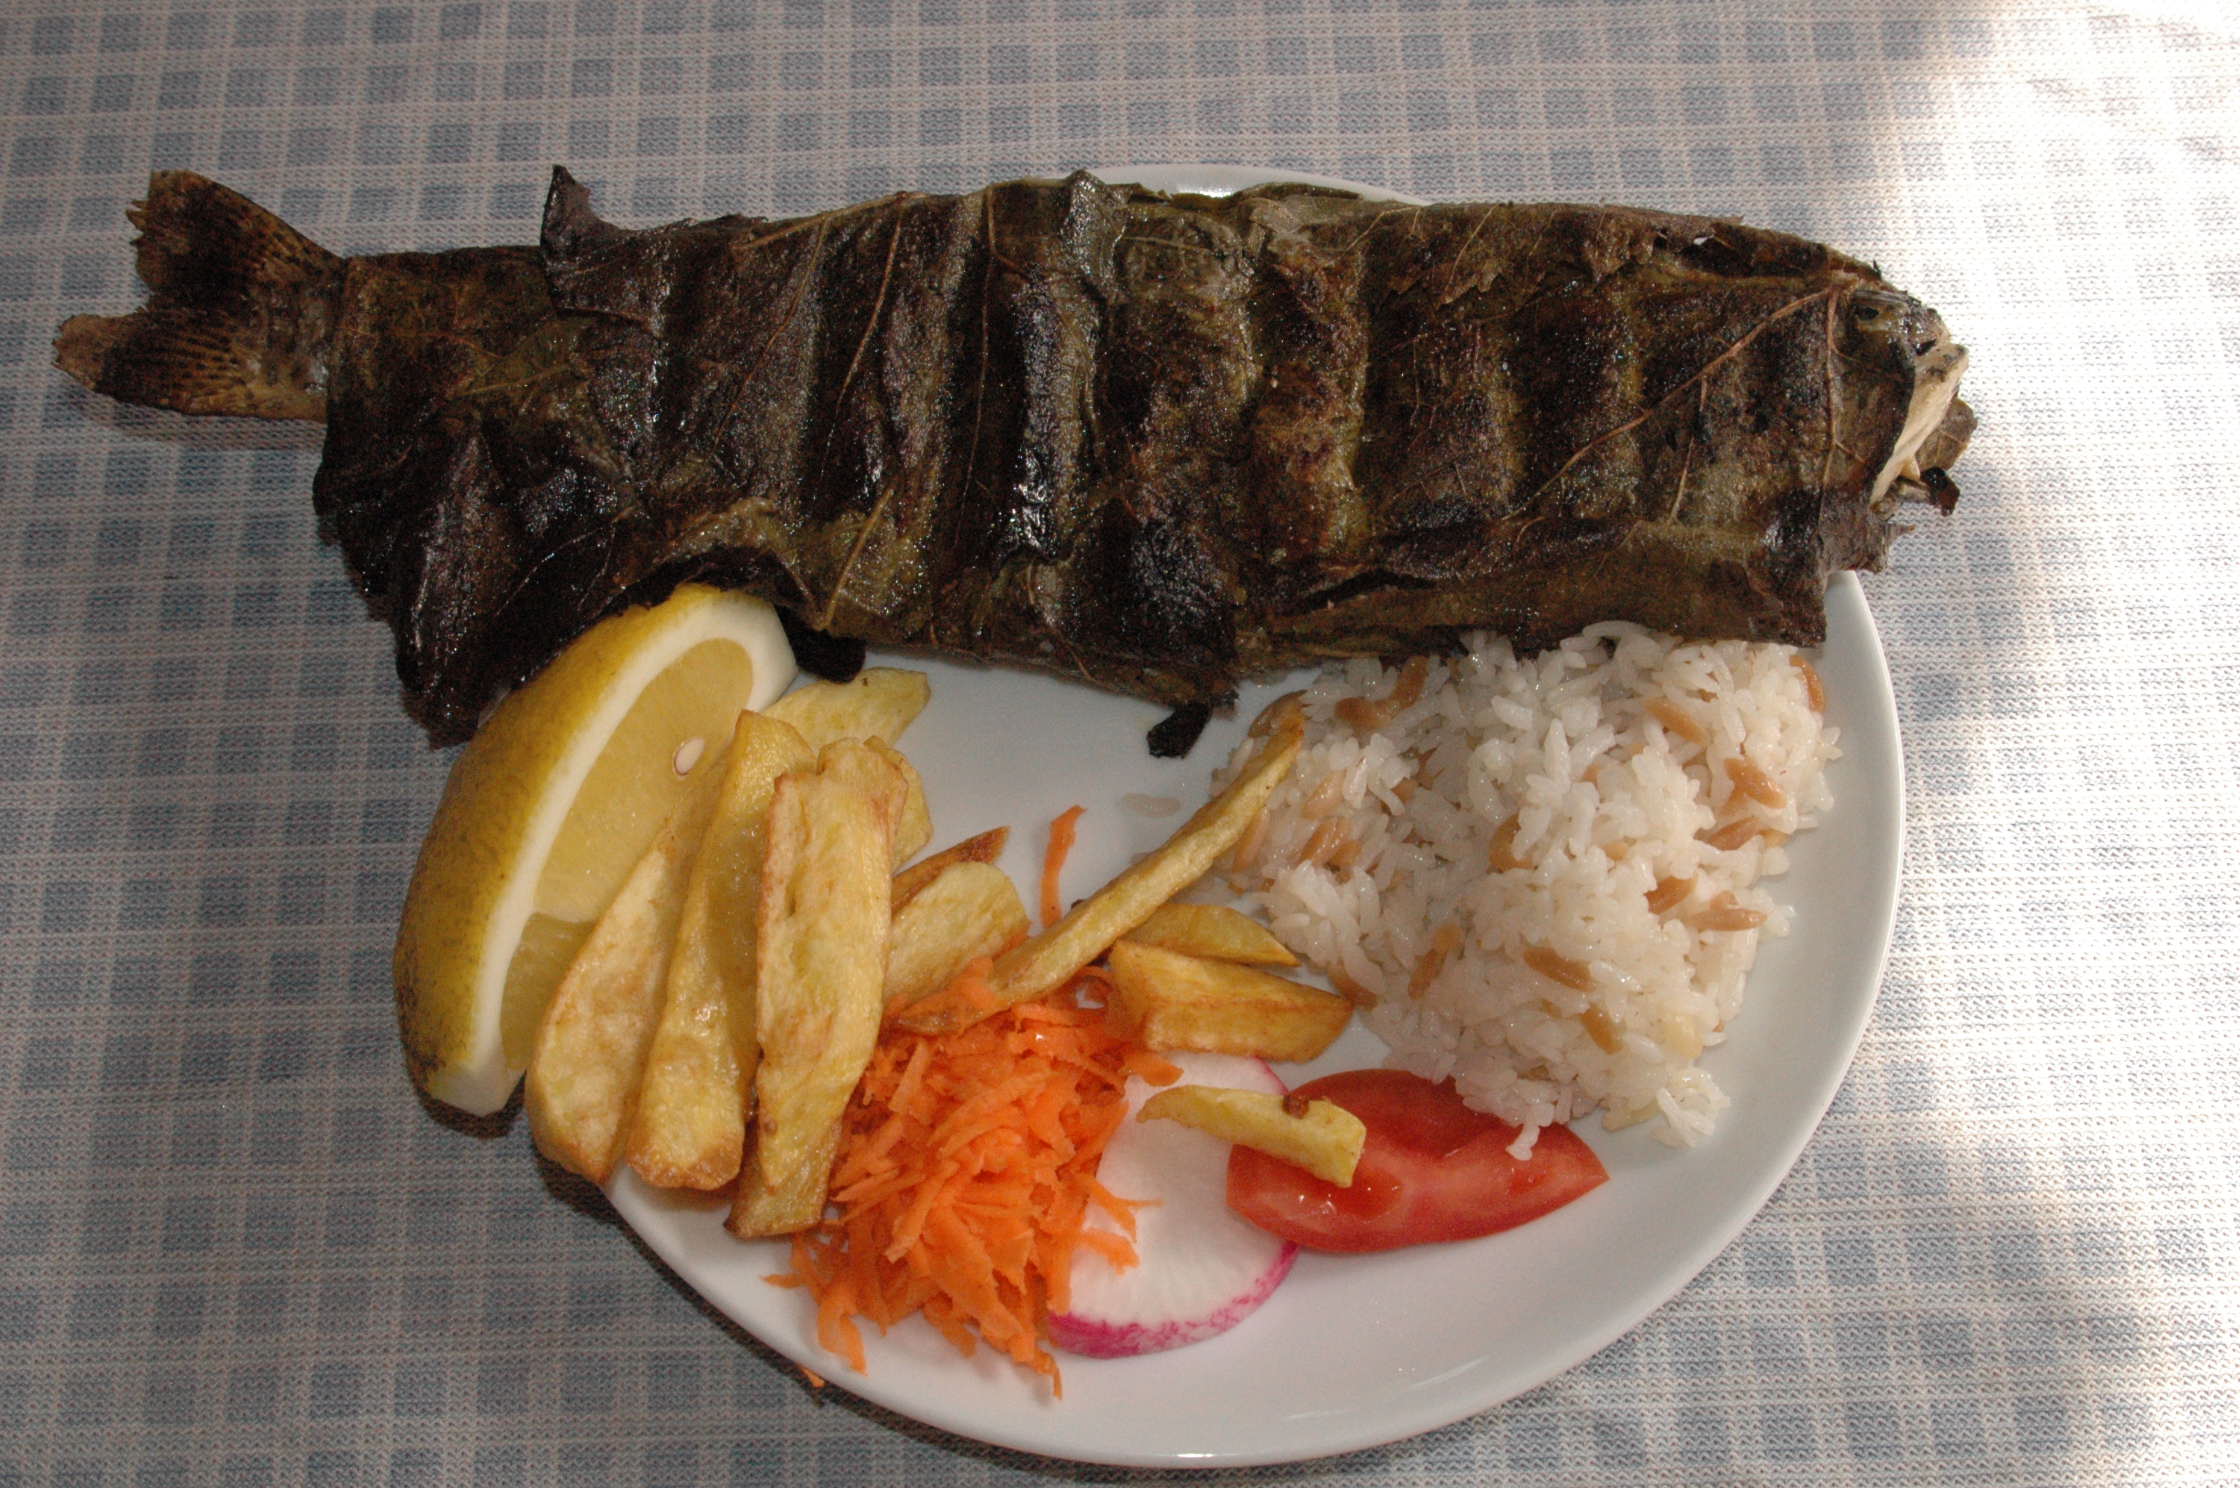 Antalya Kprl Kanyon Gkesu Restaurant